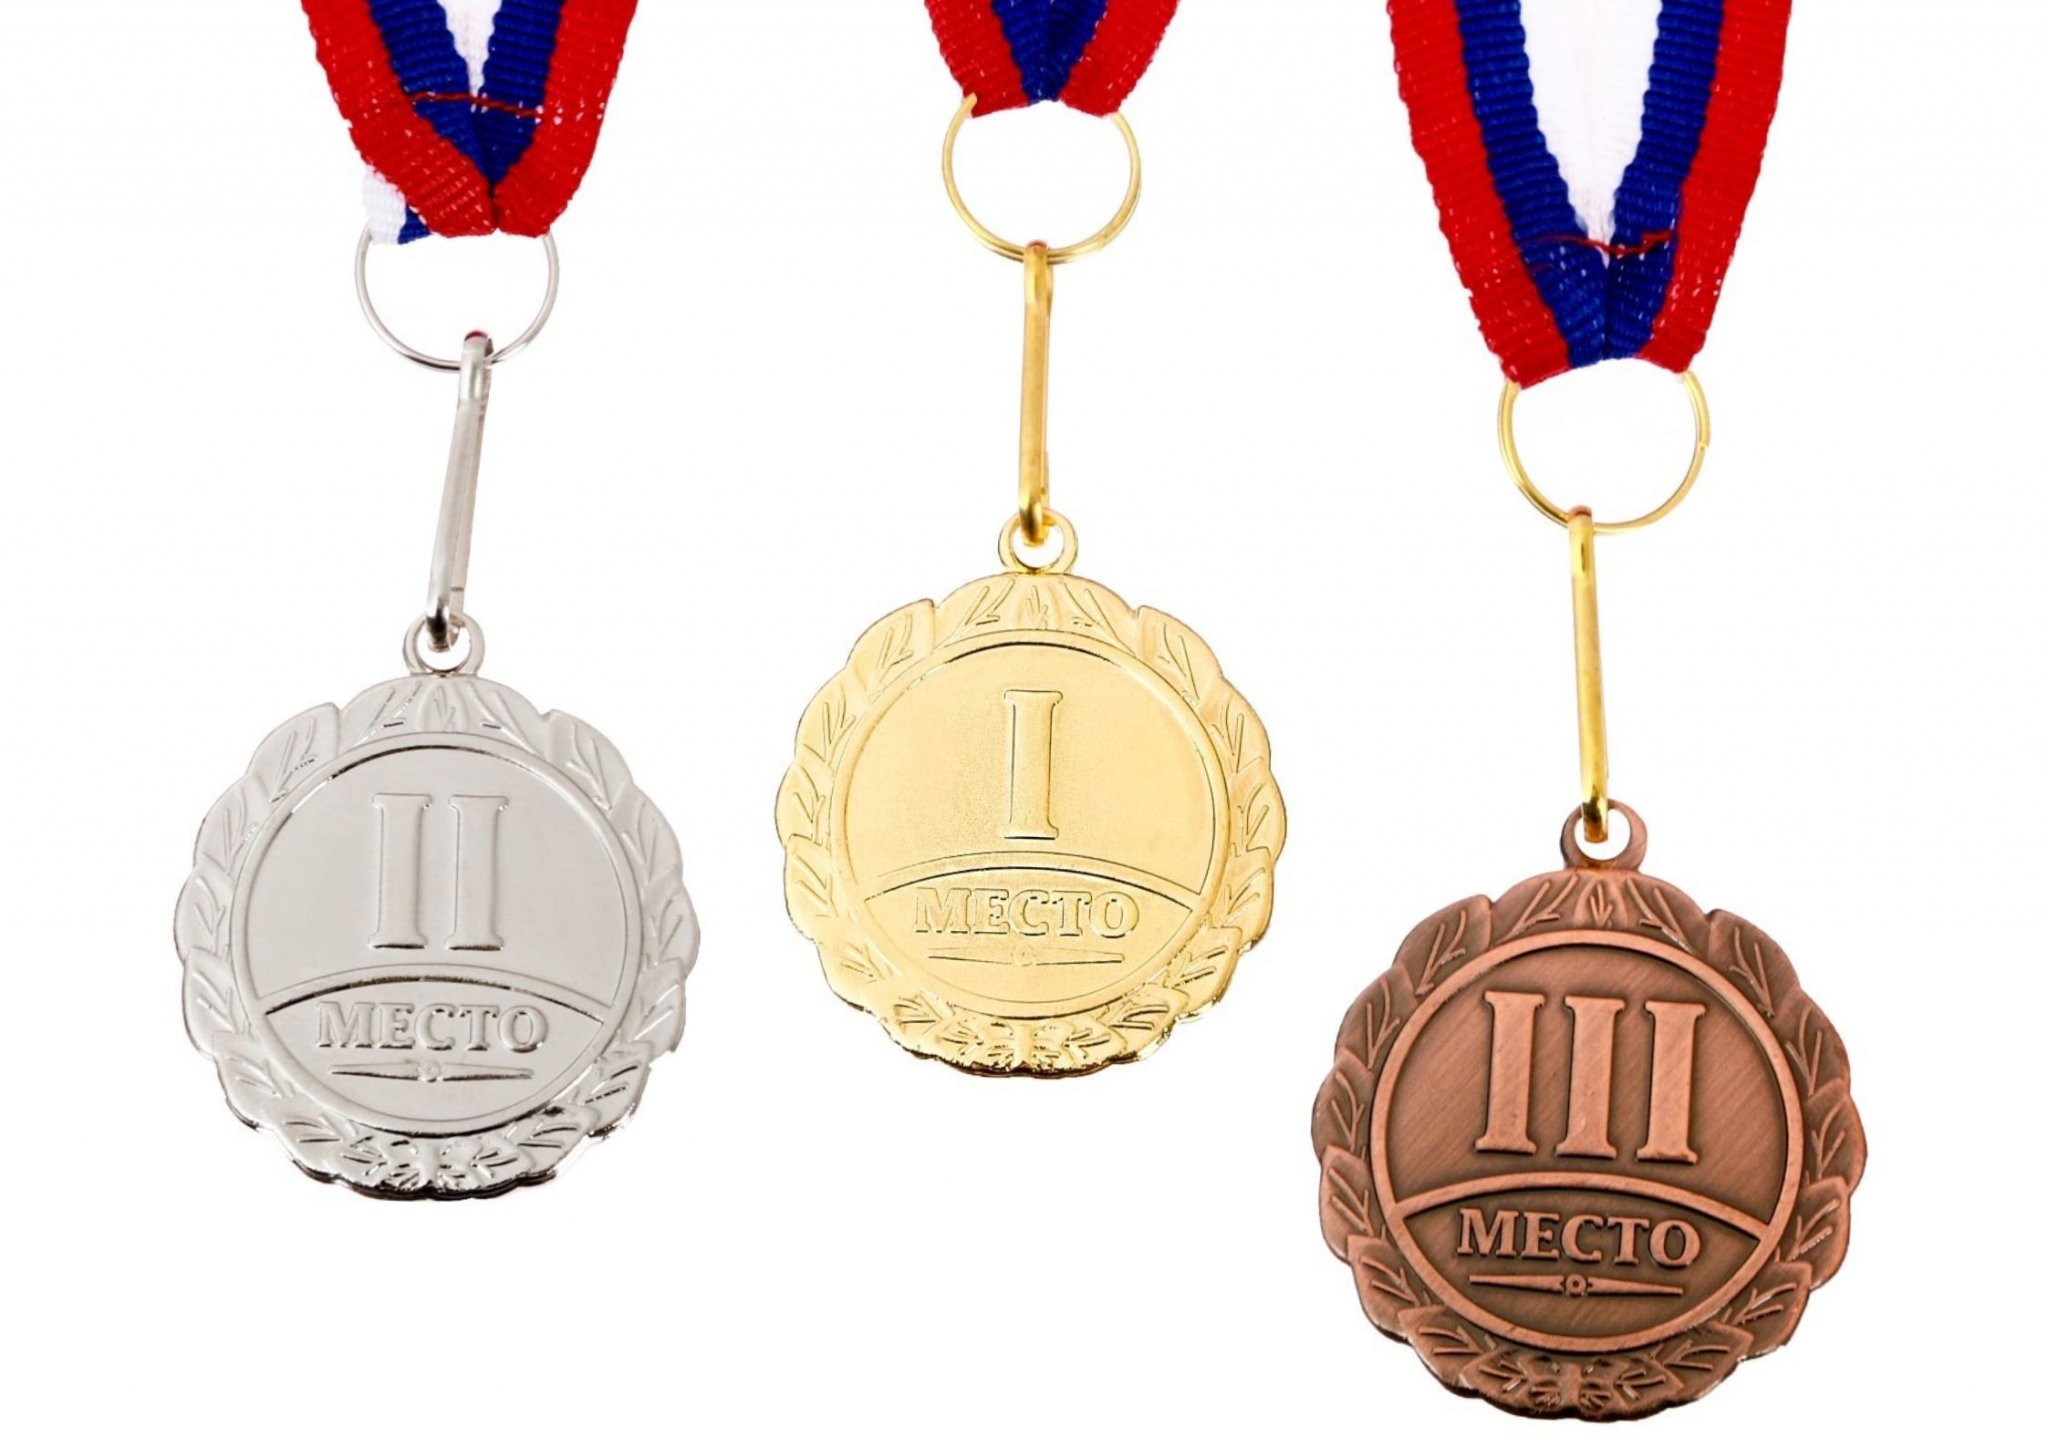 Комплект призовых медалей Globusoff  золото ,серебро, бронза, 3 шт., 202838